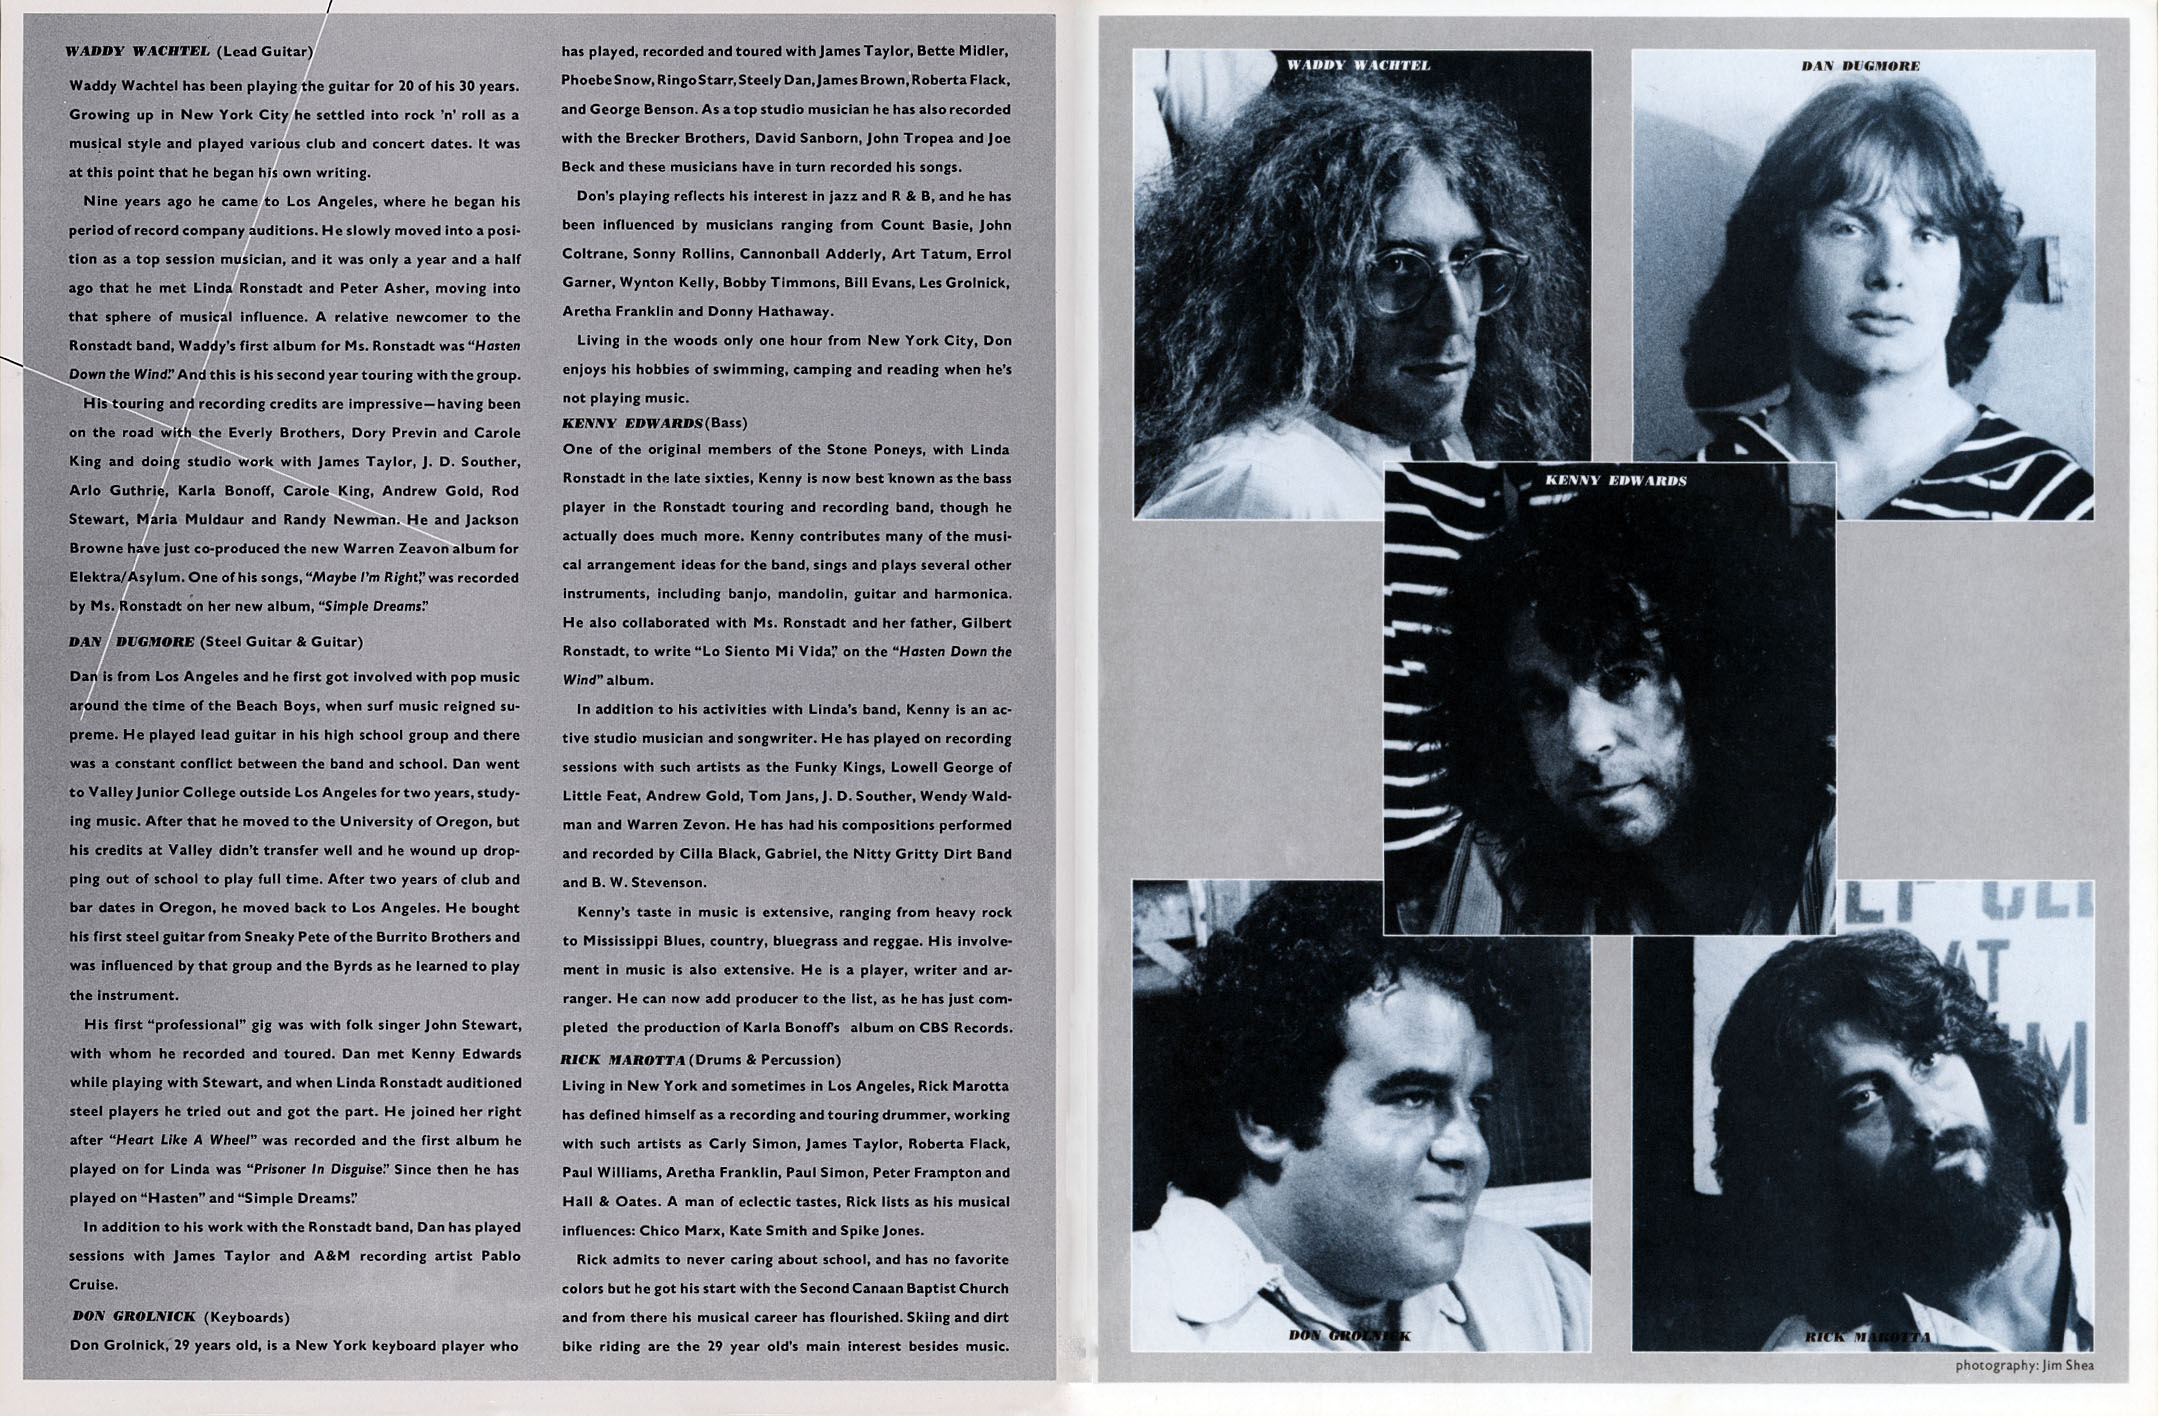 Linda Ronstadt 1977 tour book Simple Dreams